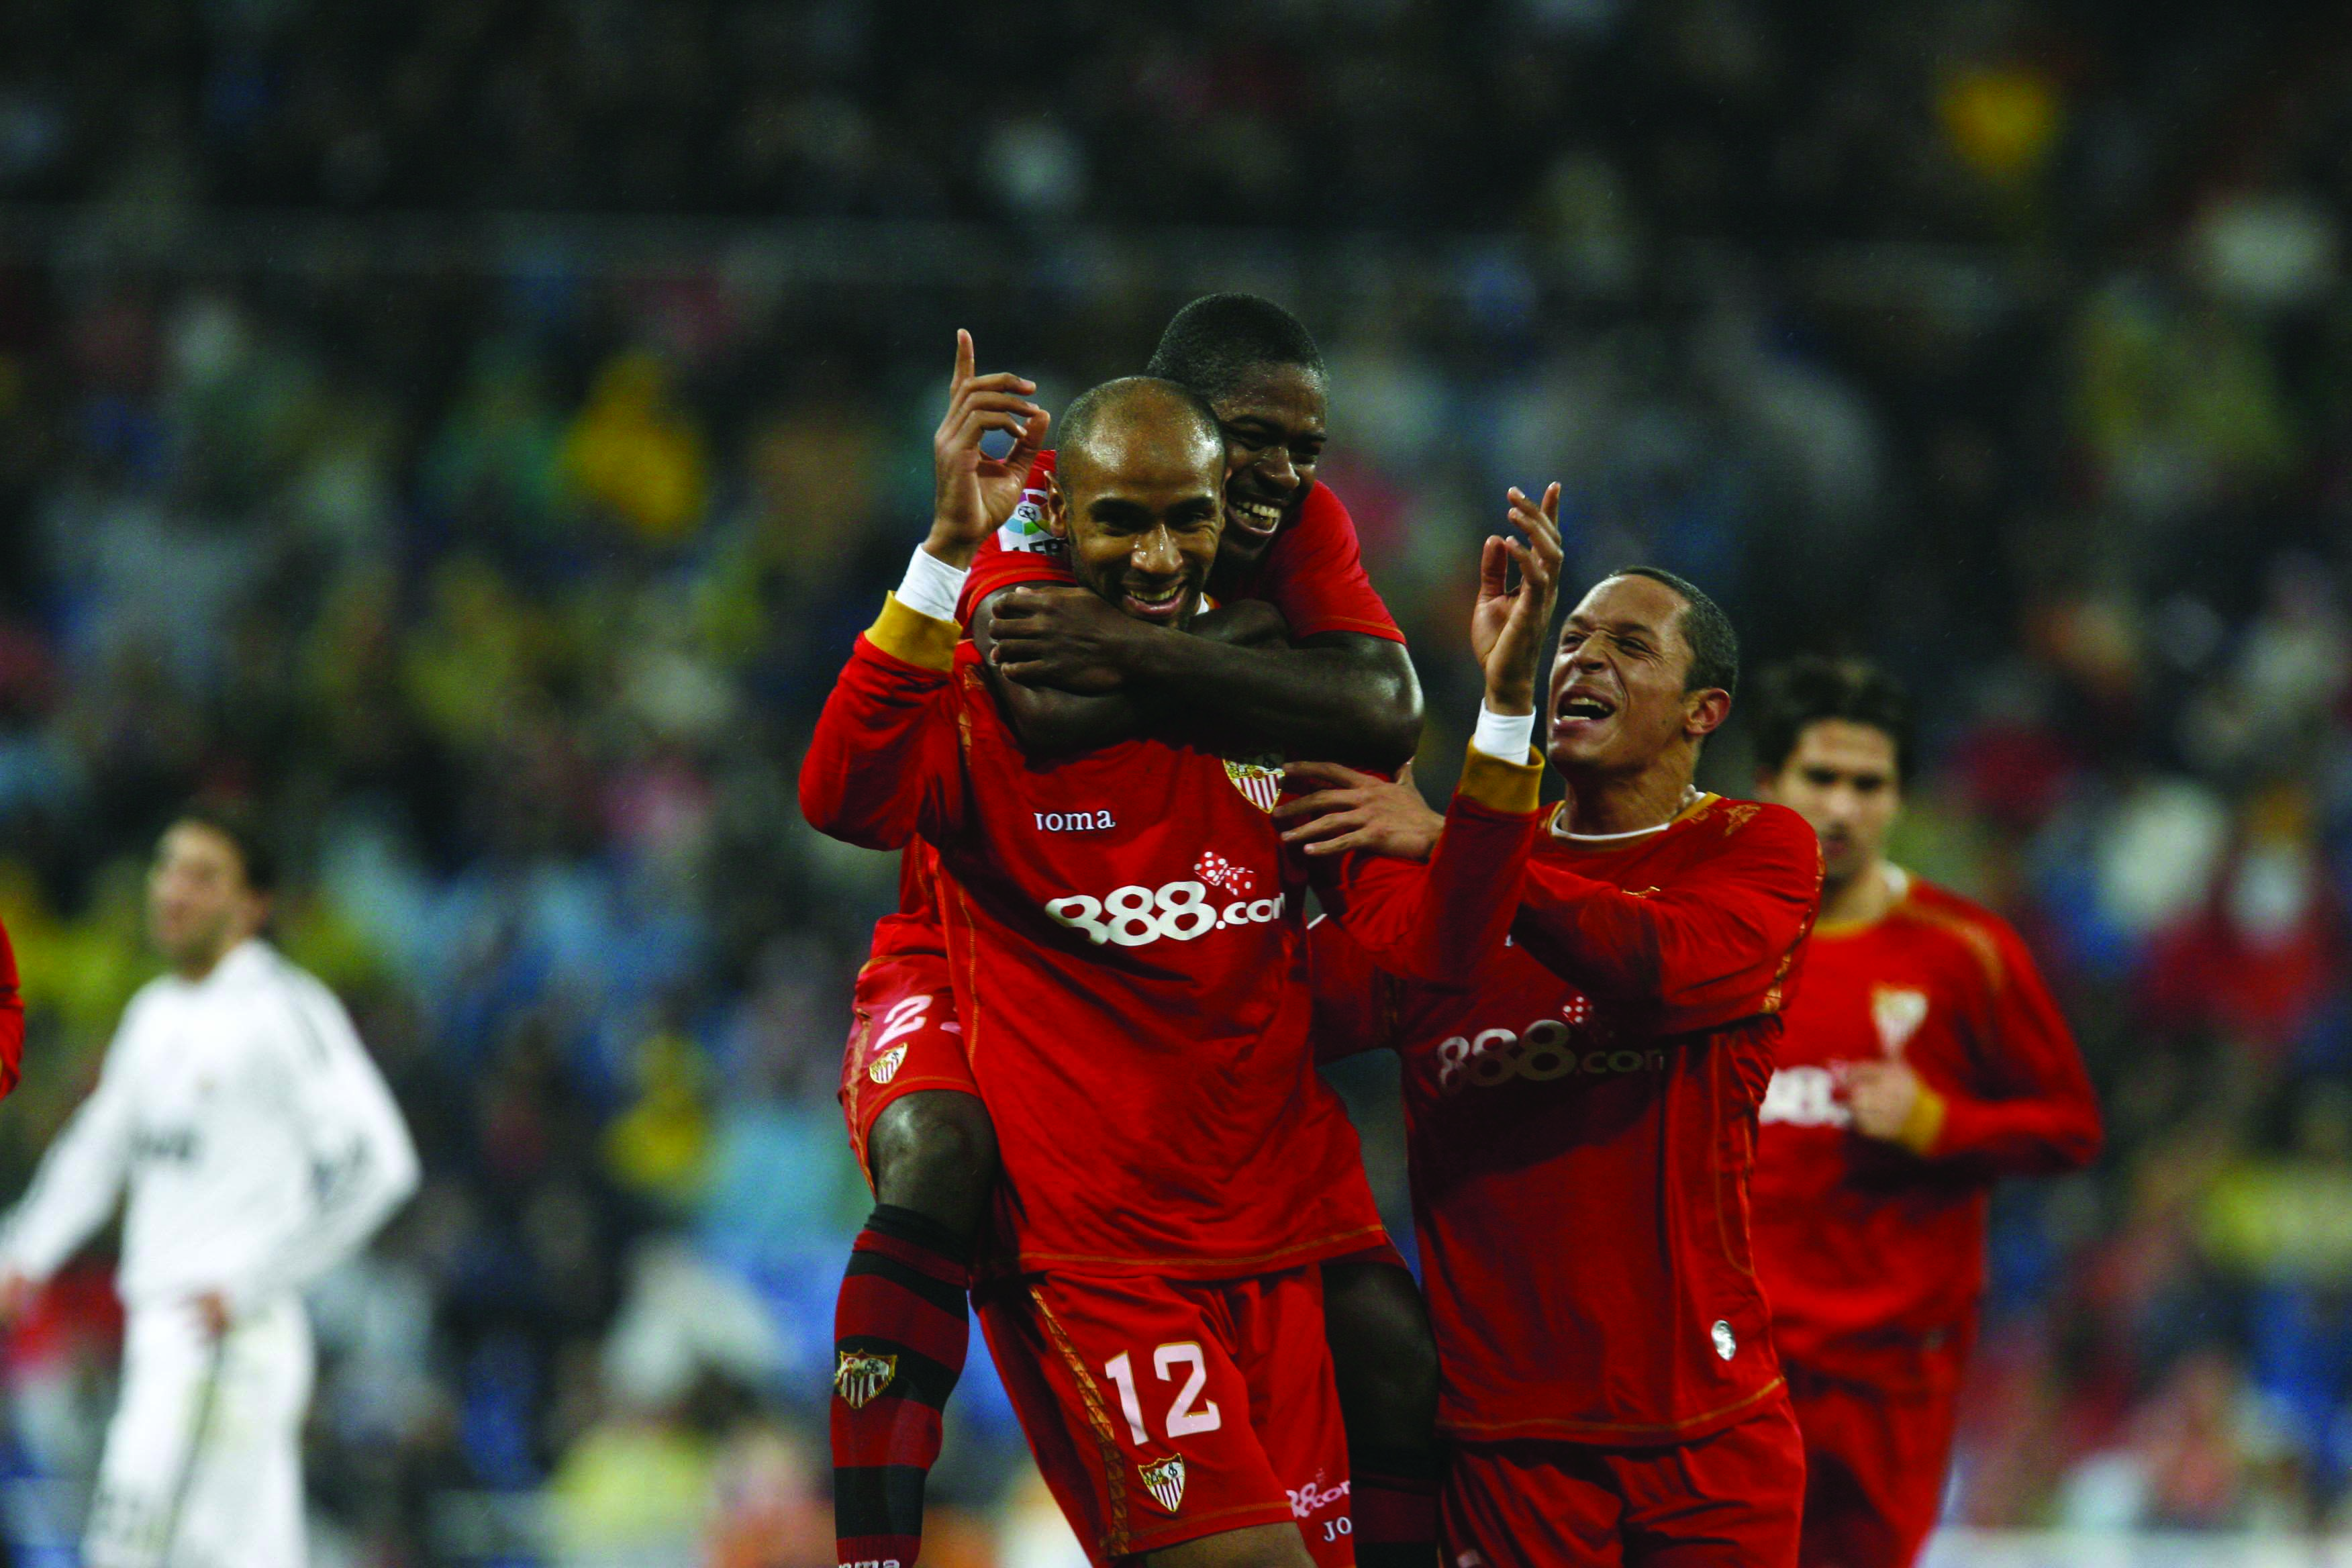 Kanouté celebrates scoring at the Bernabéu